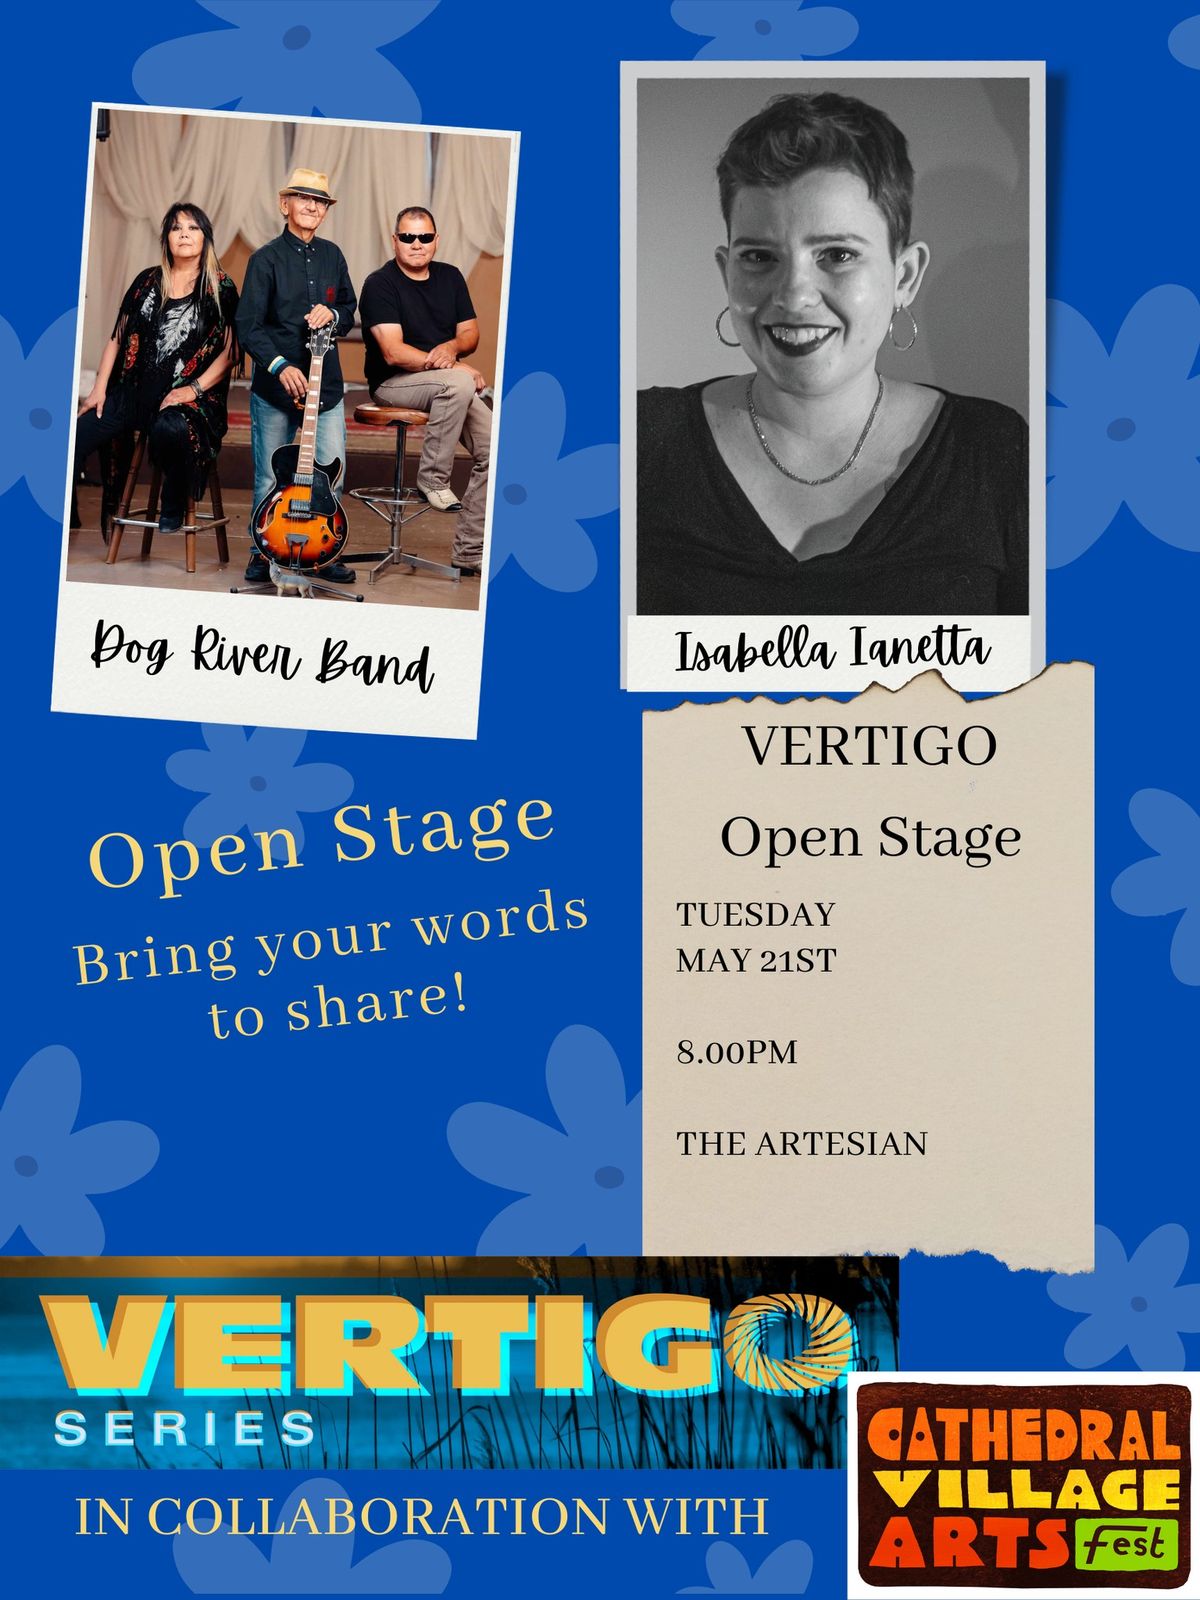 Vertigo Open Stage at CVAF!